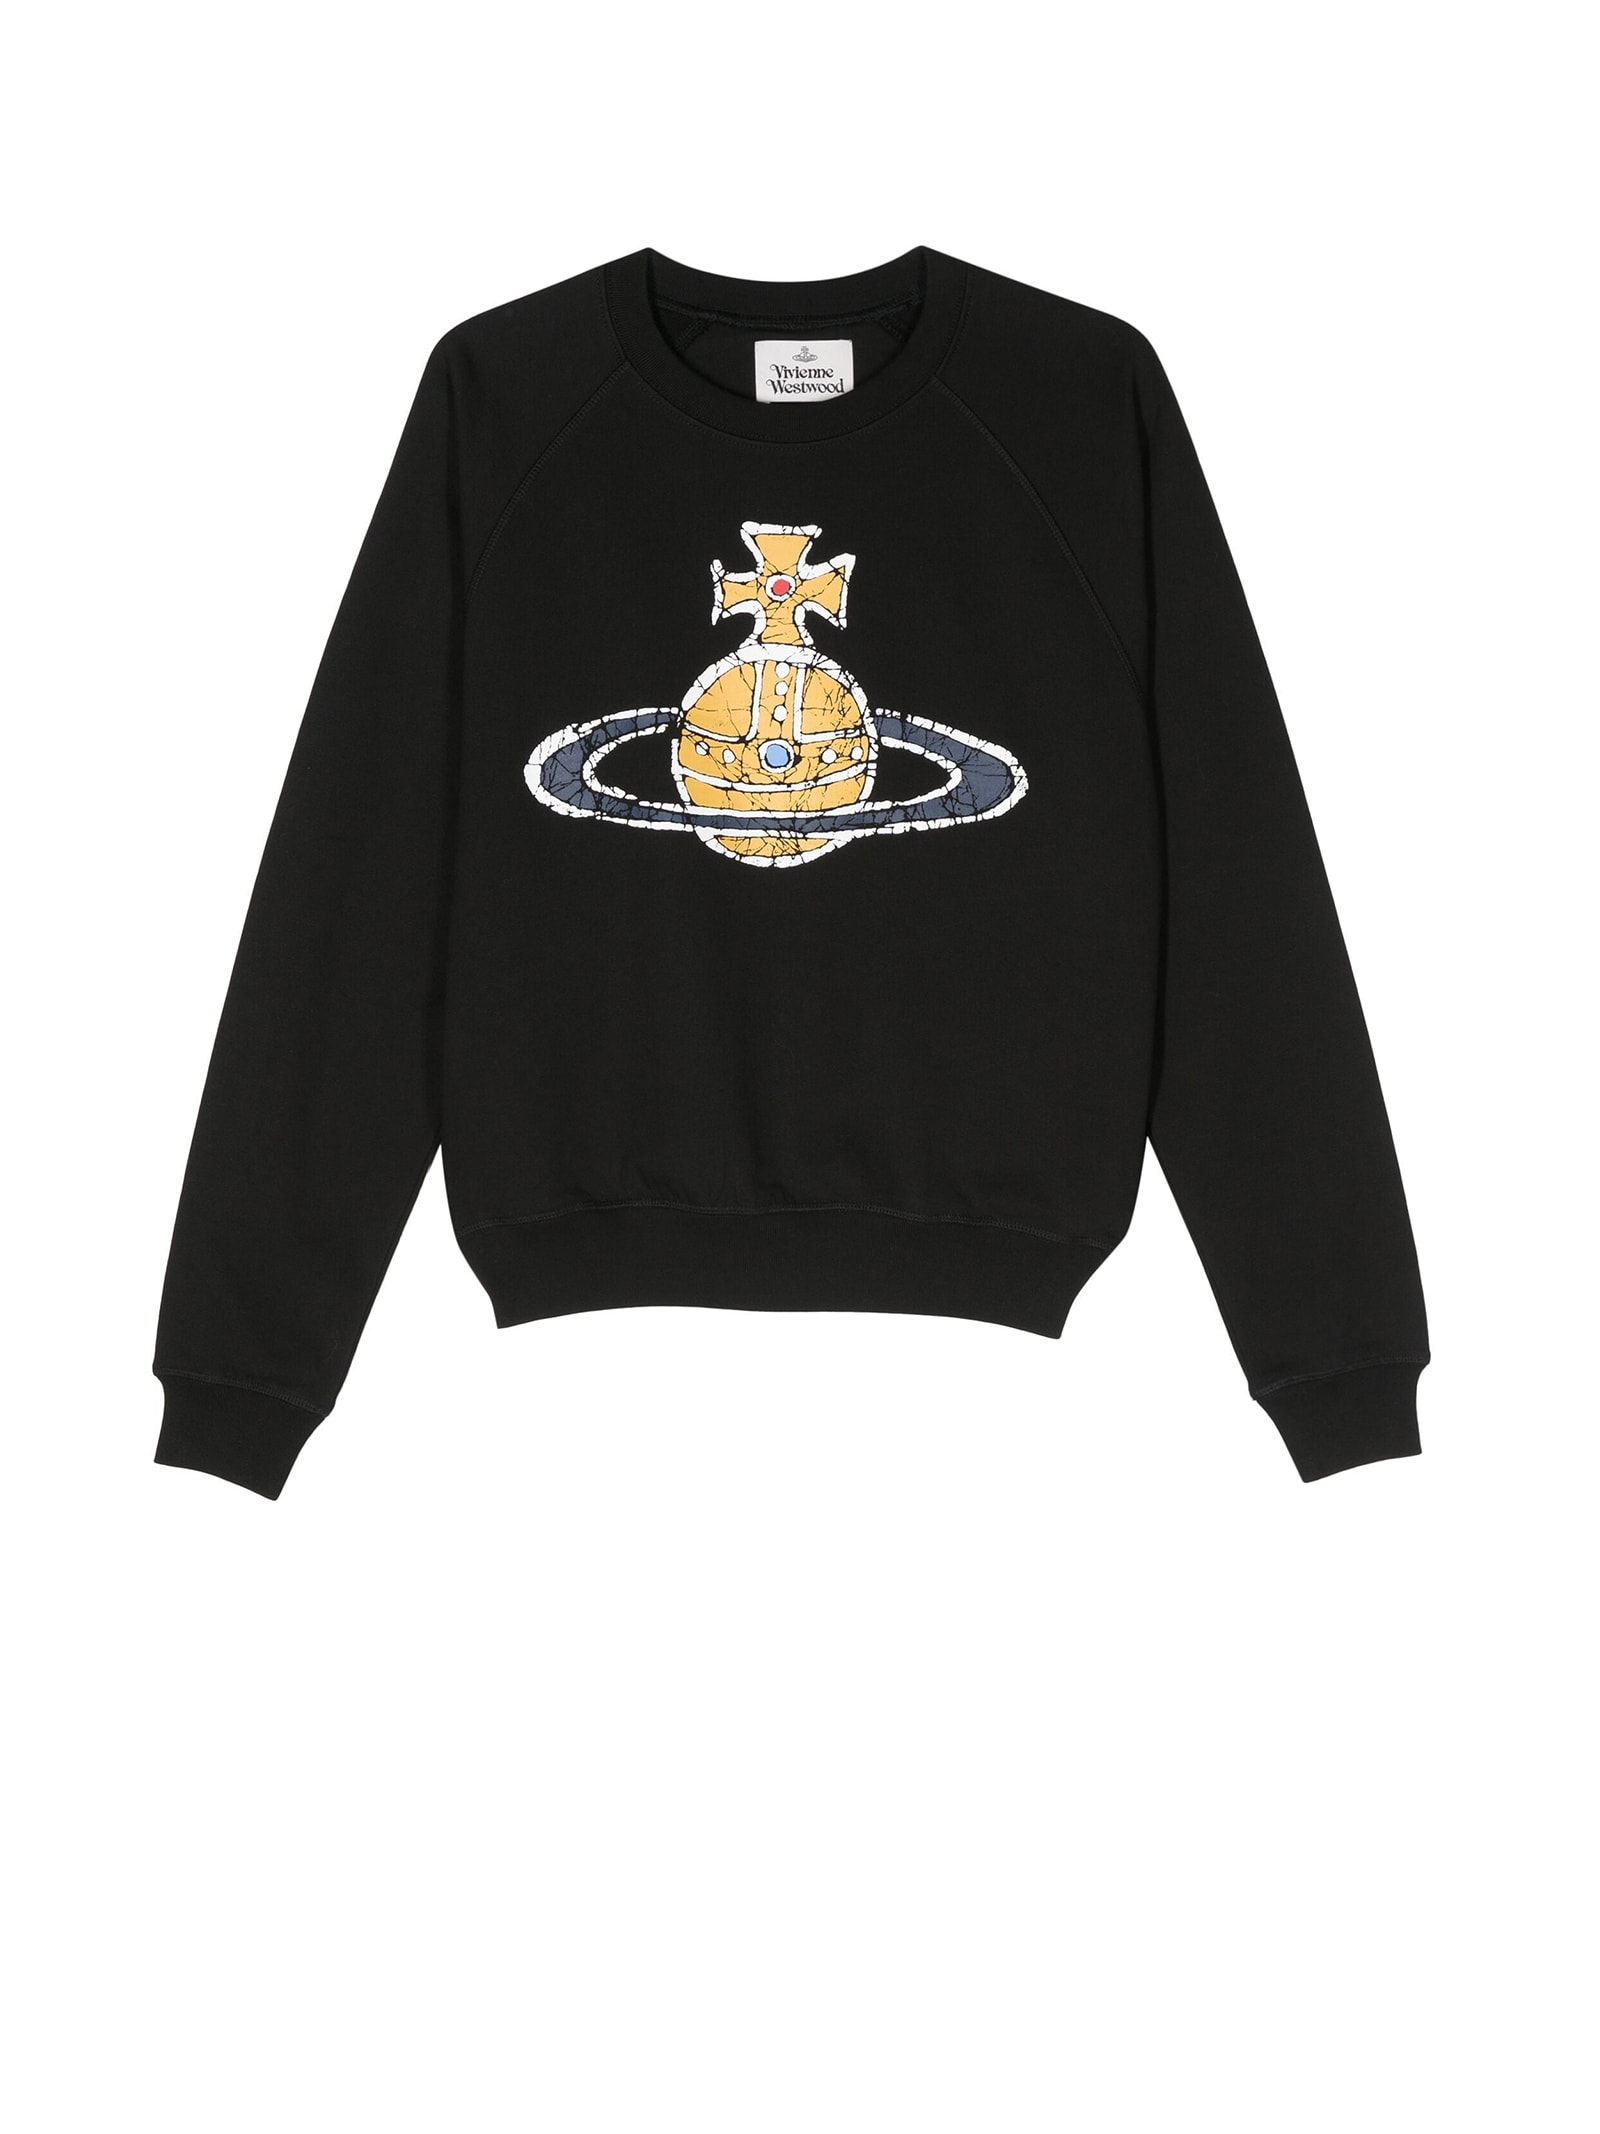 Vivienne Westwood Black Crewneck Sweatshirt With Print